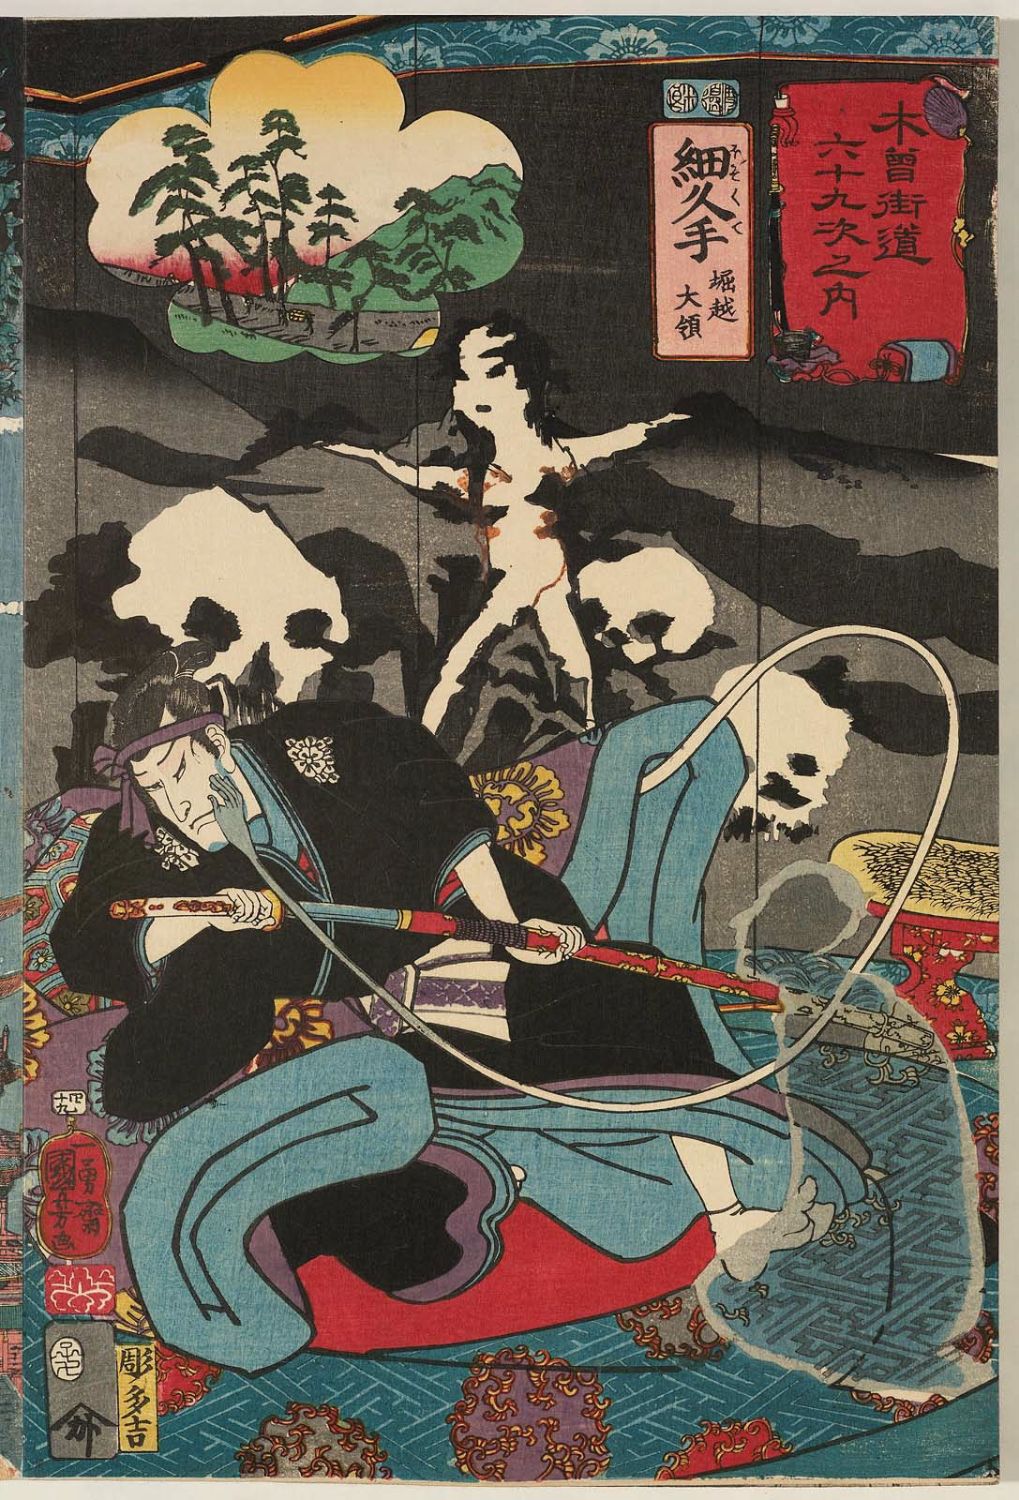 Utagawa Kuniyoshi: 「木曾街道六十九次之内」「四十九」「細久手堀越 